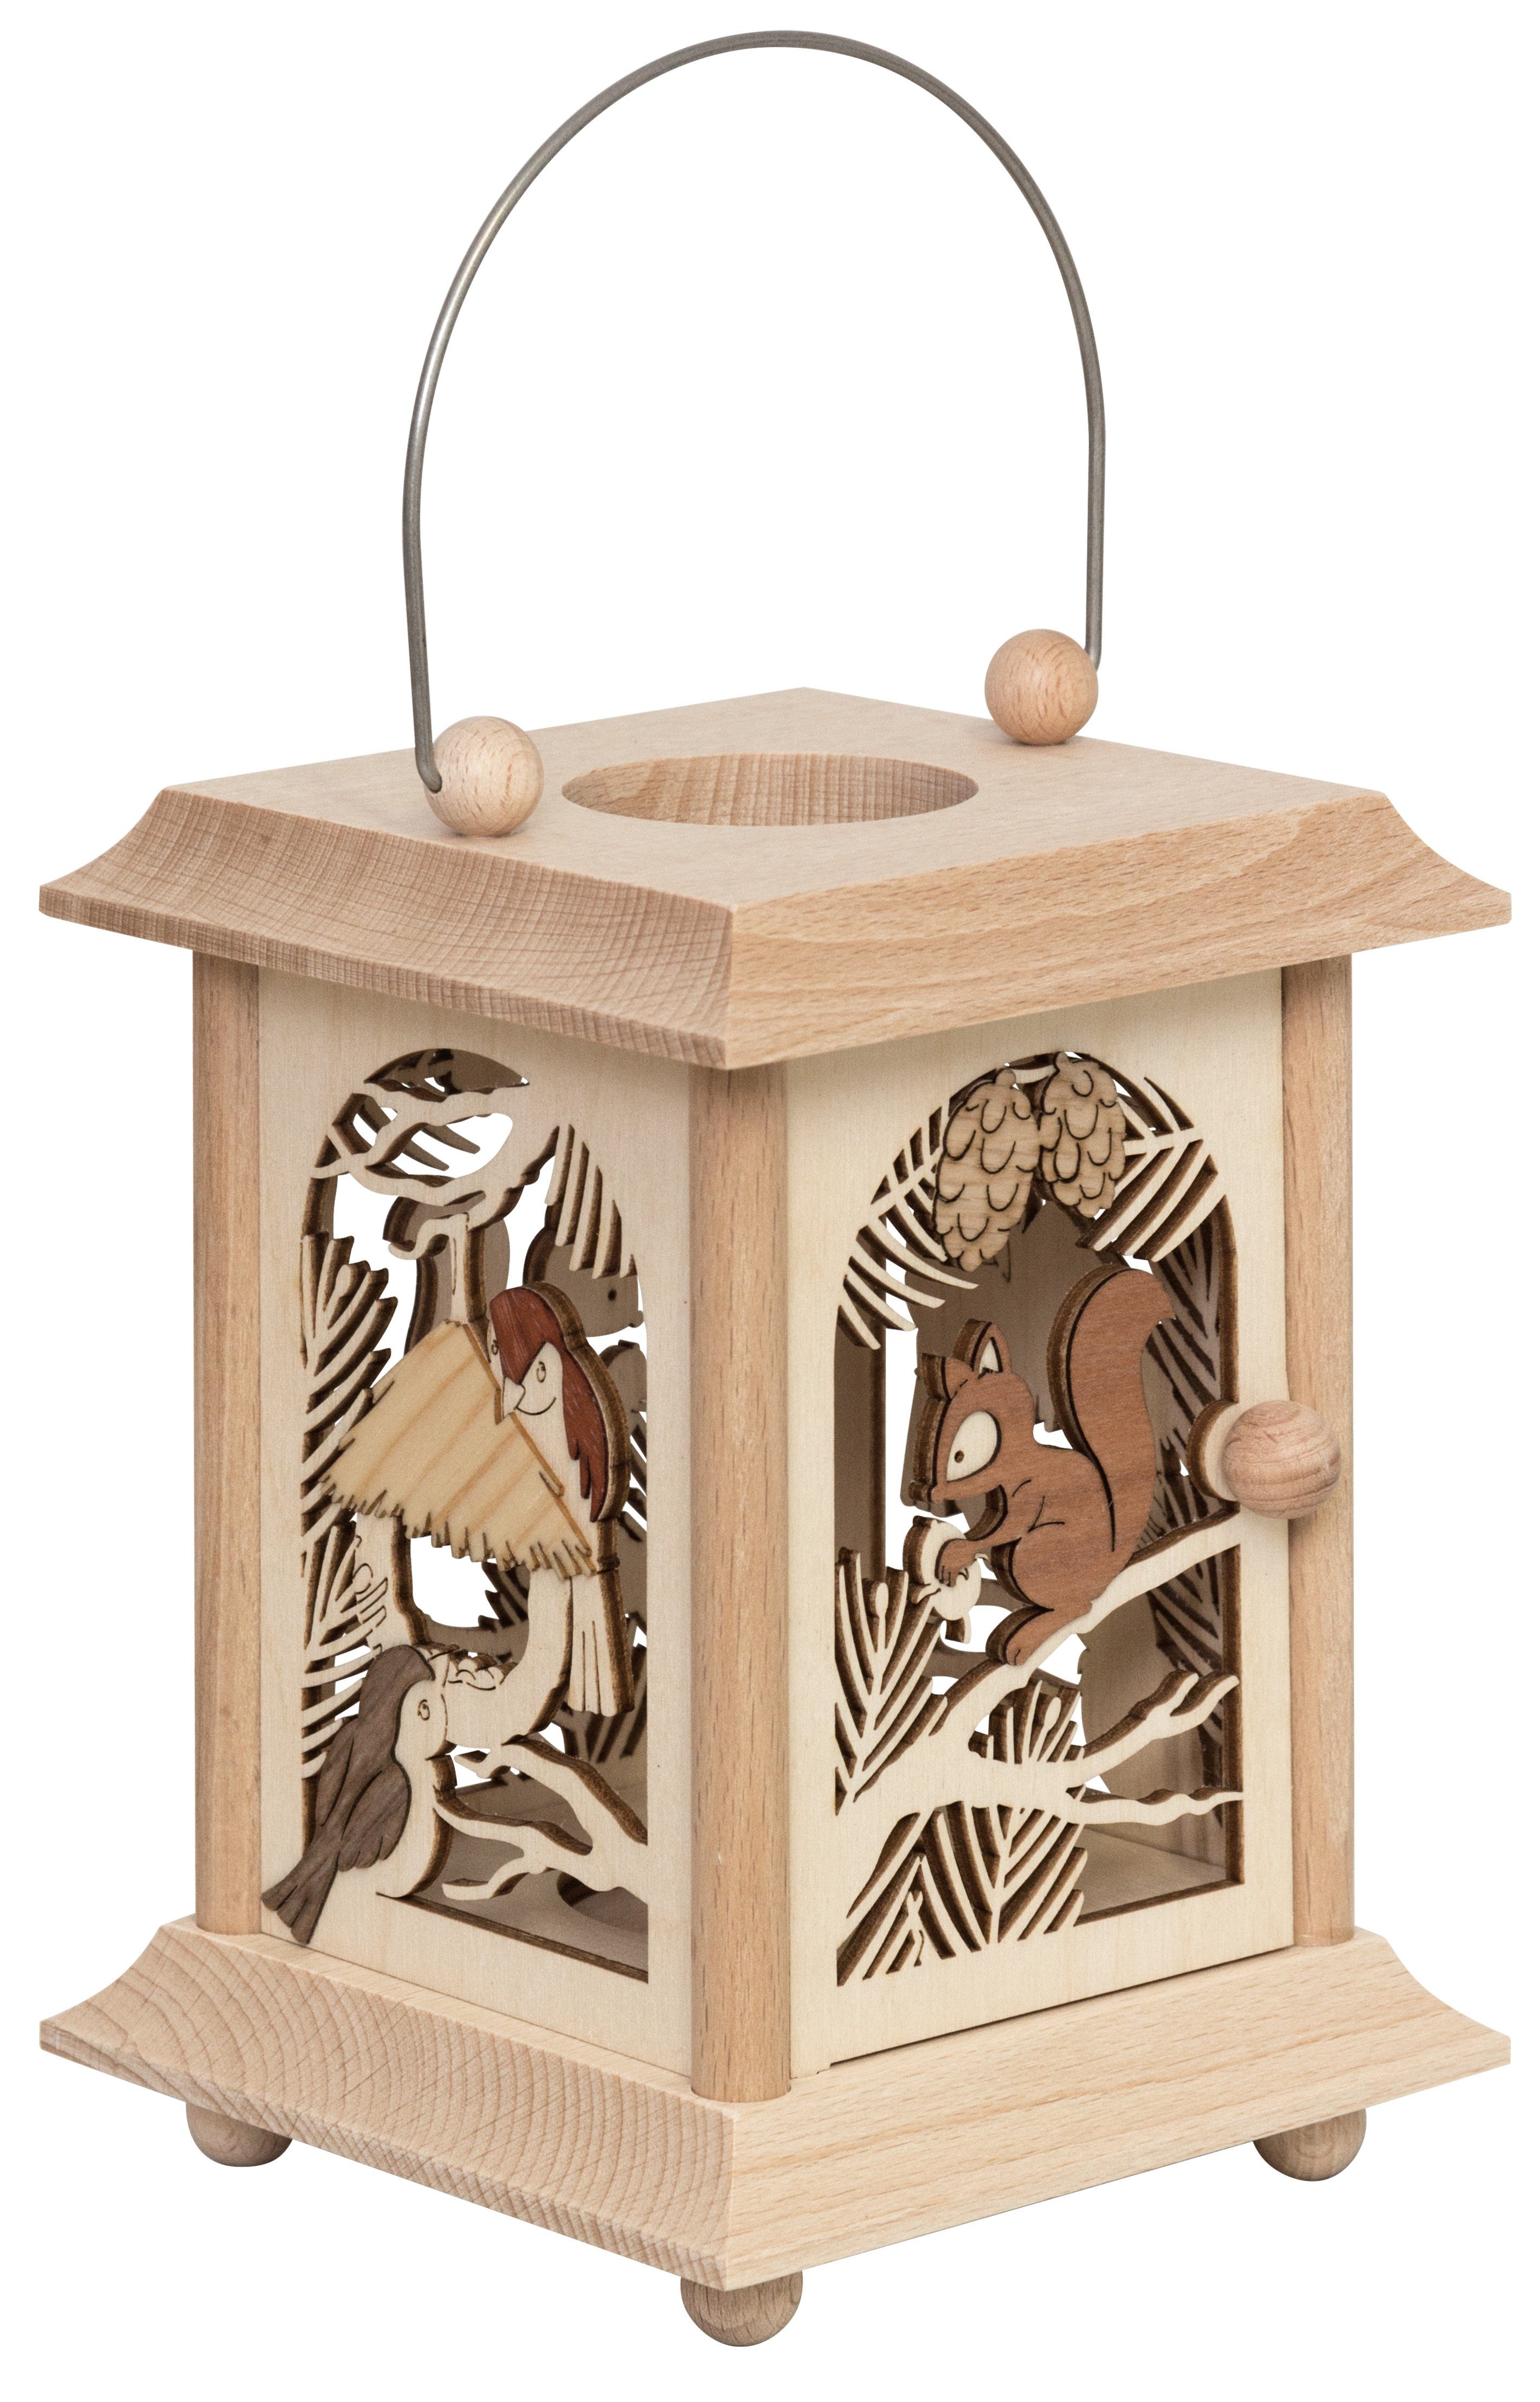 Kuhnert Kerzenlaterne 27055, Eichhörnchen & Vogel, hochwertige Tischlaterne aus Holz, Made in Germany